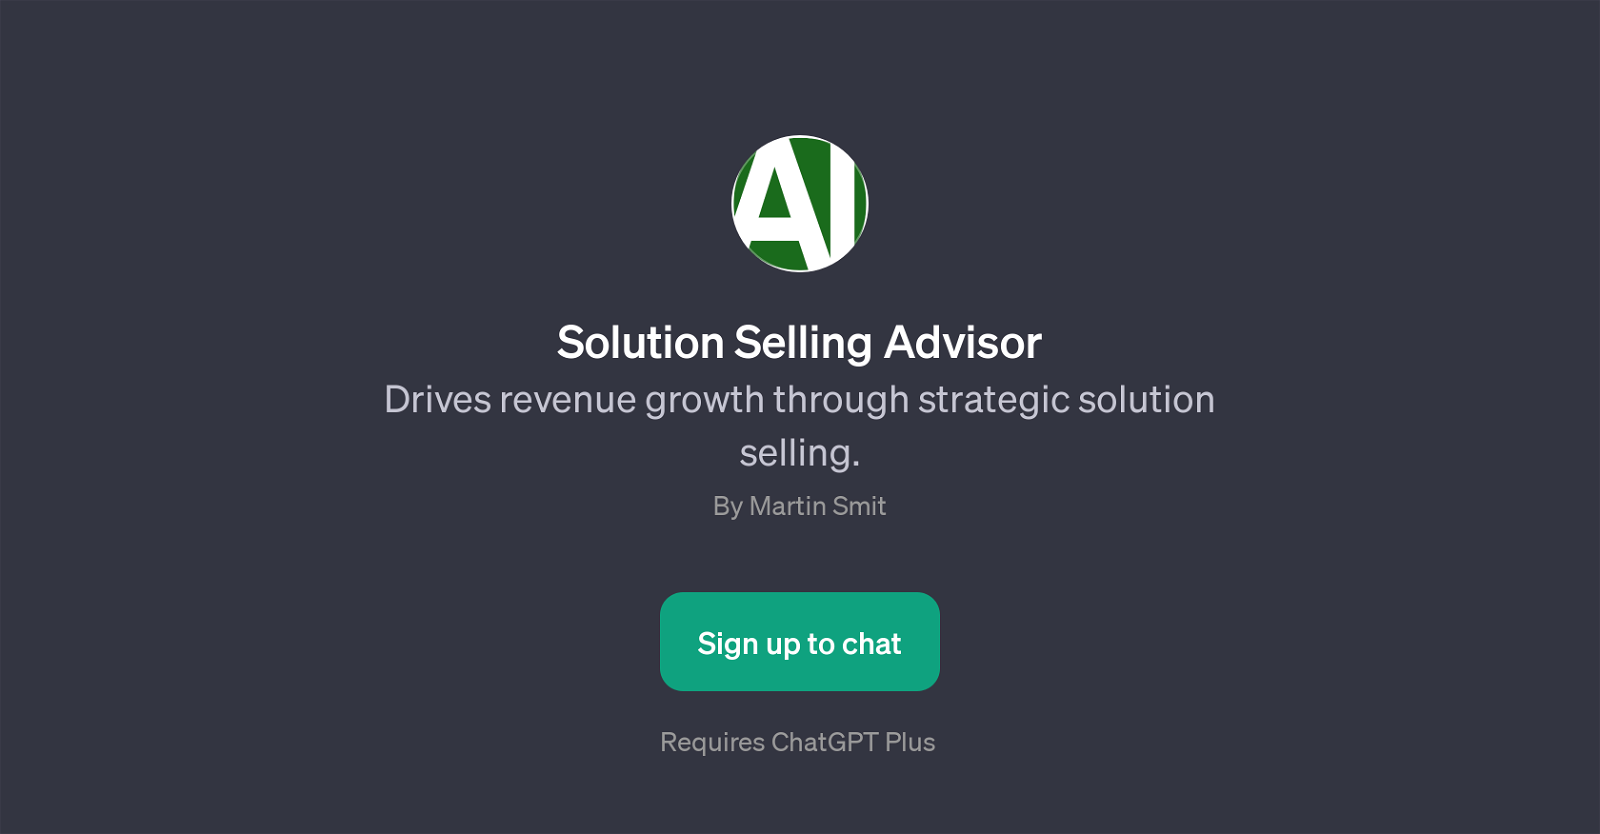 Solution Selling Advisor website